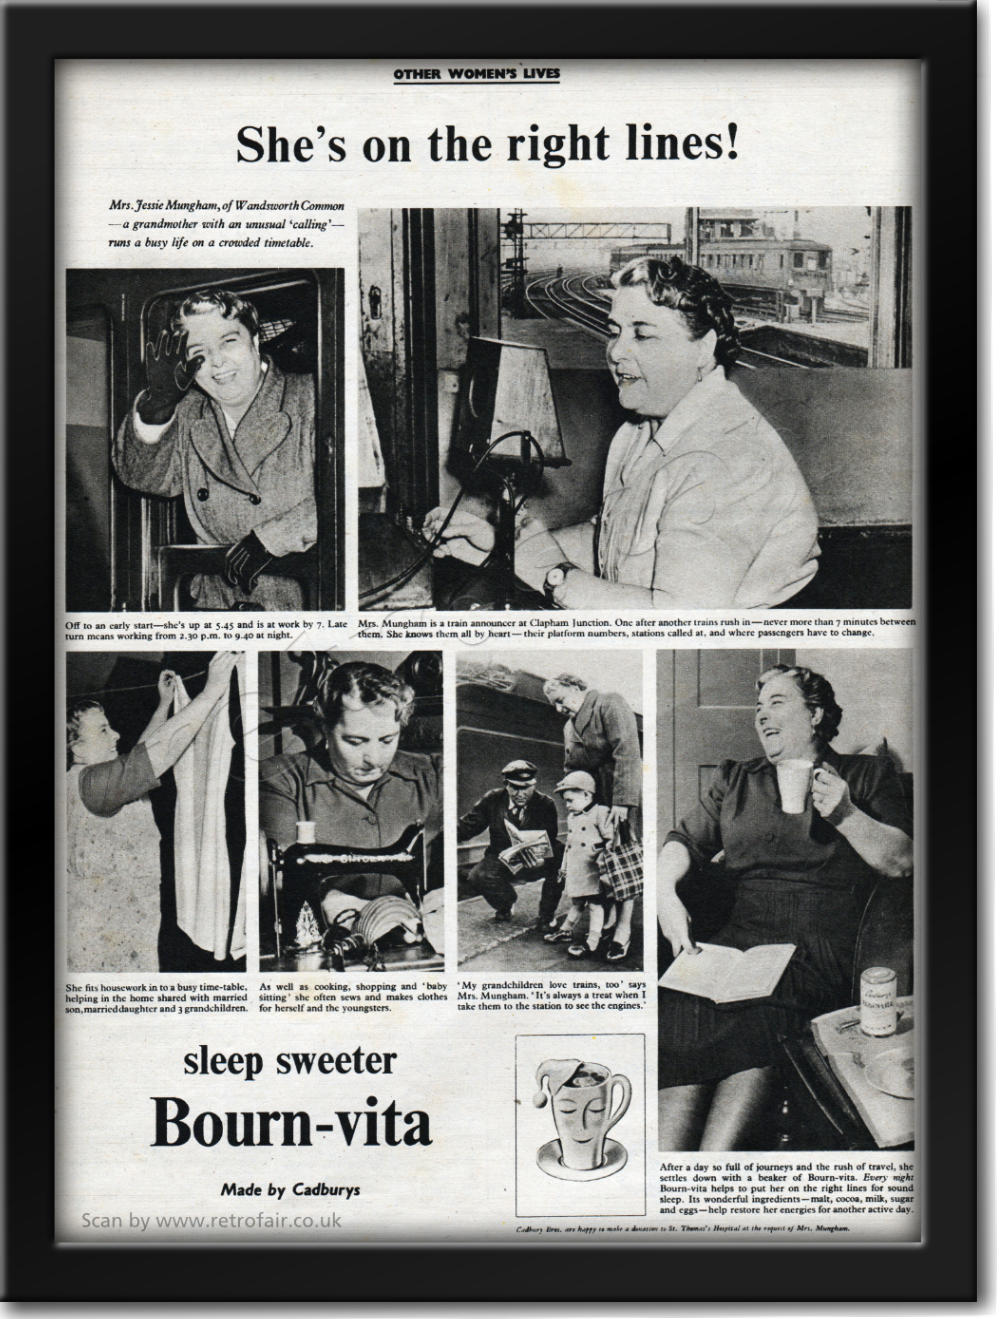 vintage 1952 Bourn-vita advert